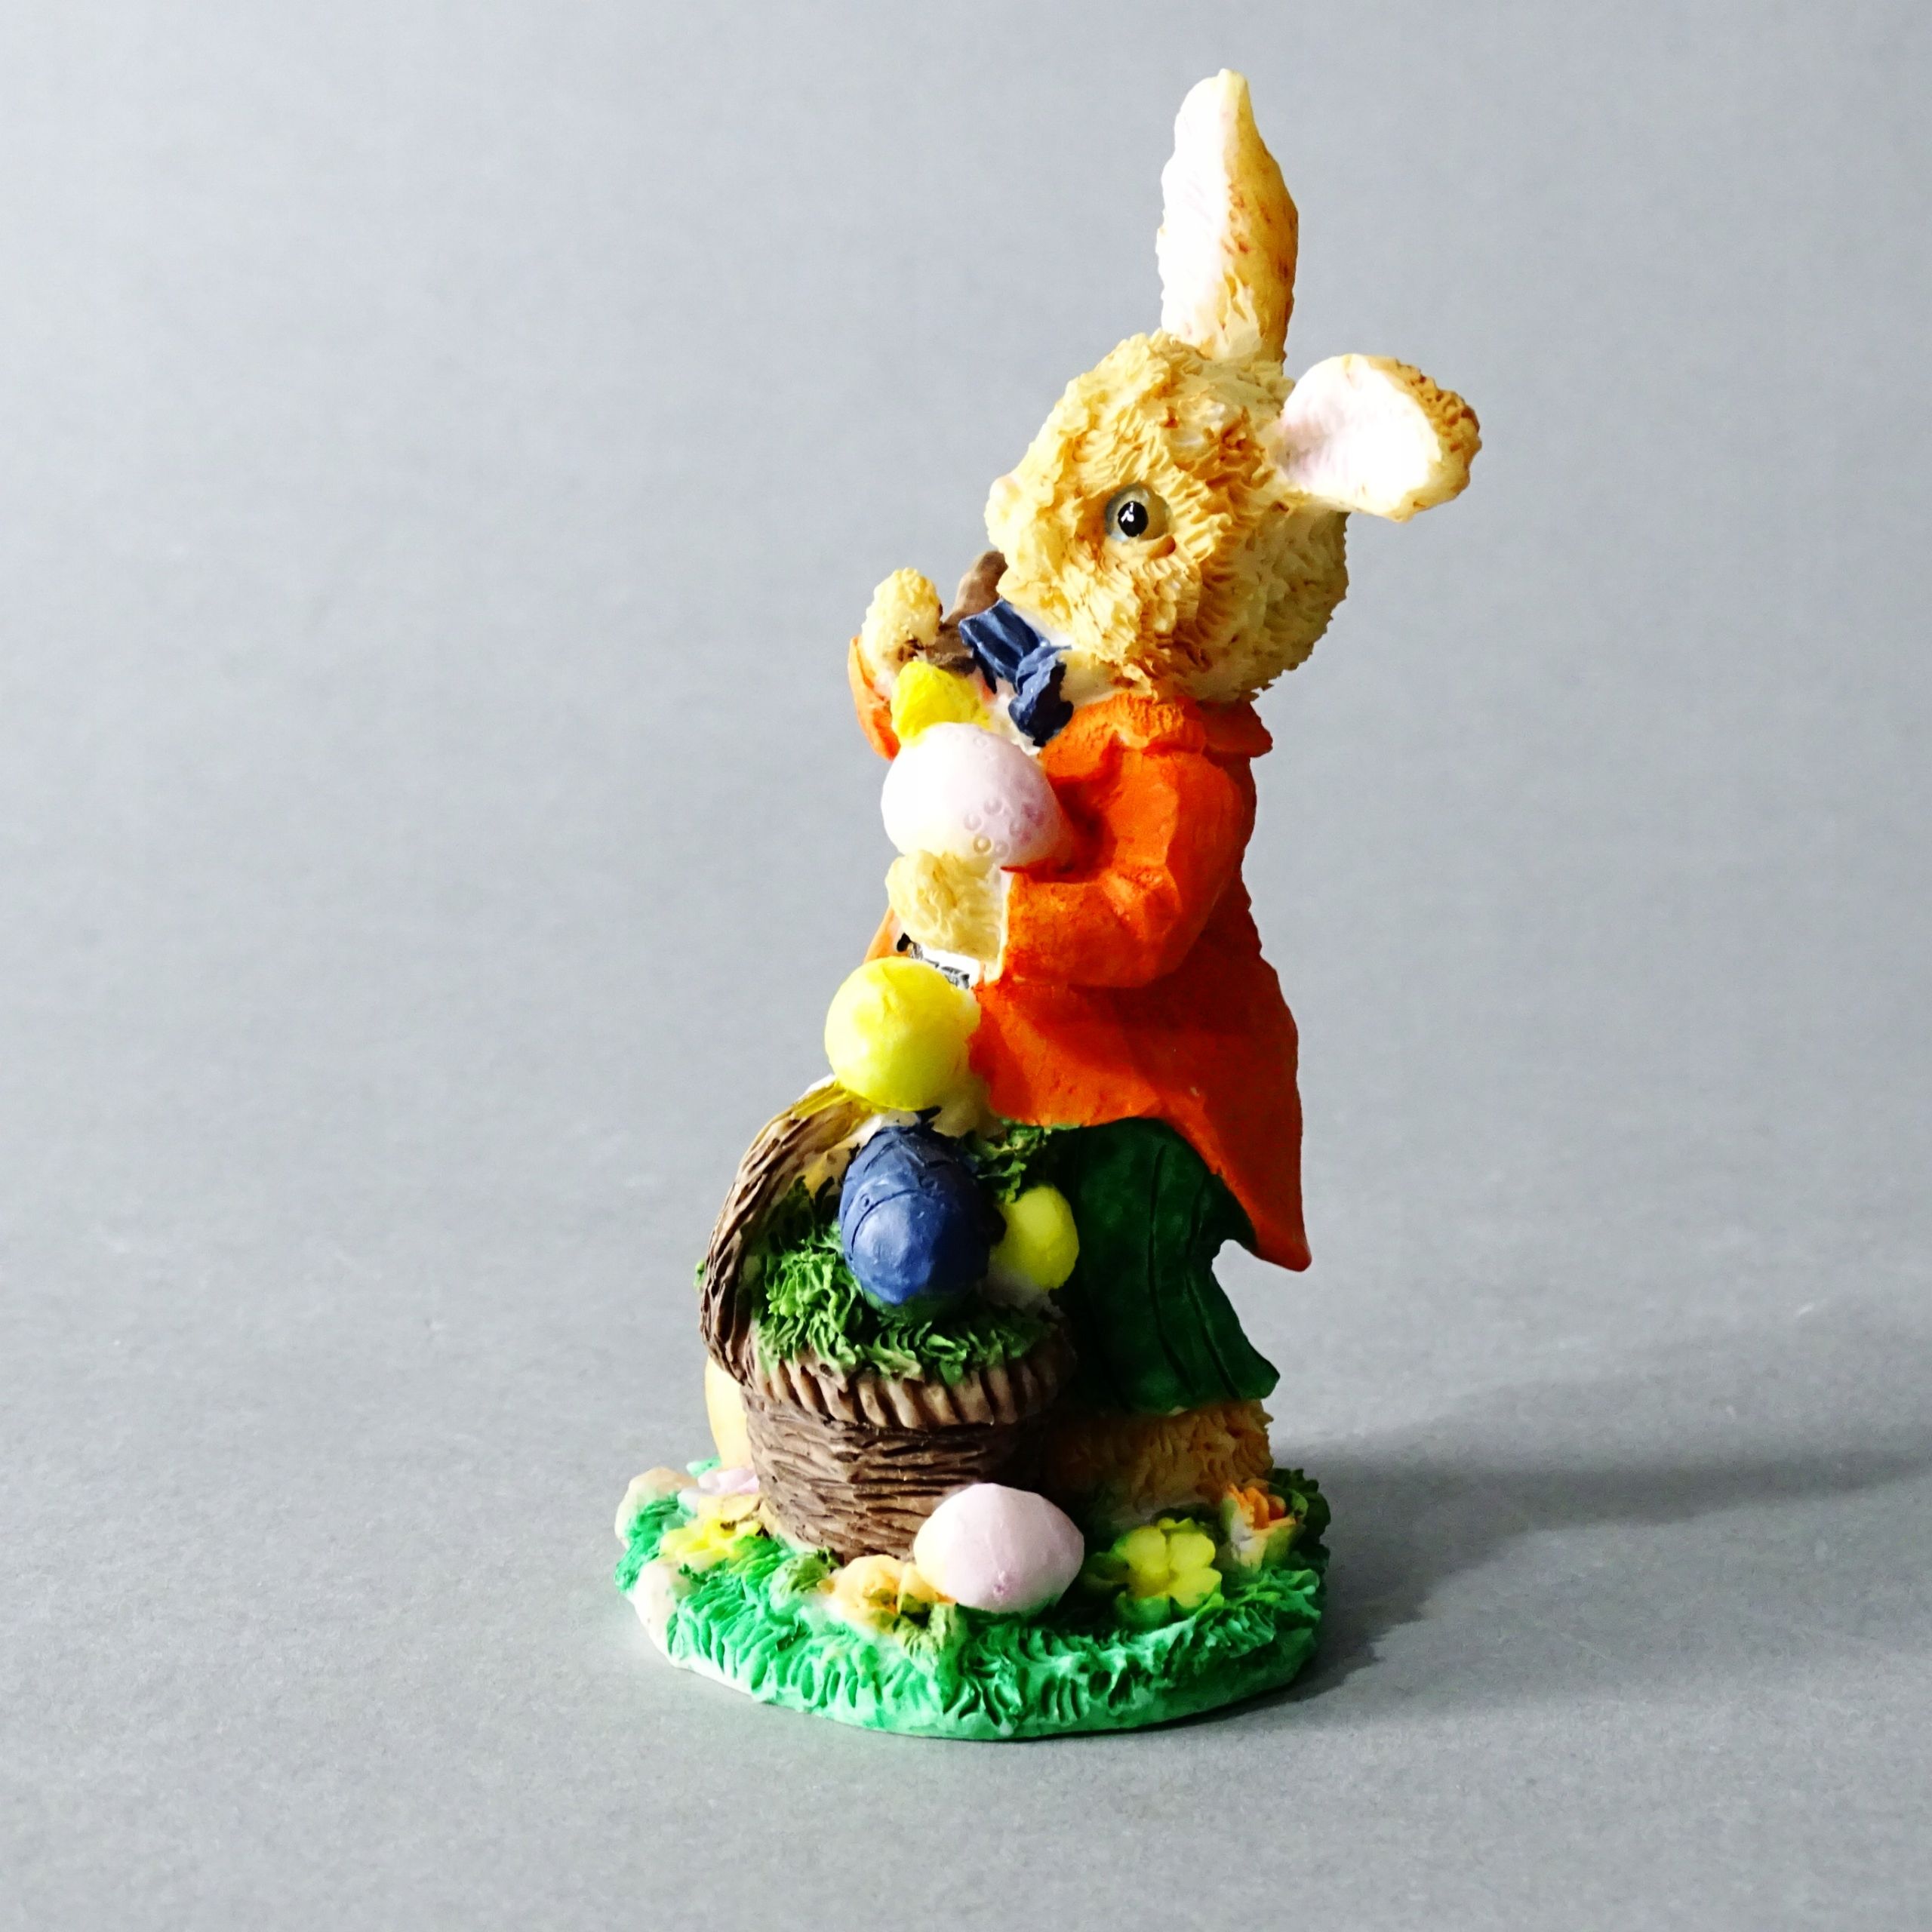 figurka alabastrowa zając królik wielkanocny